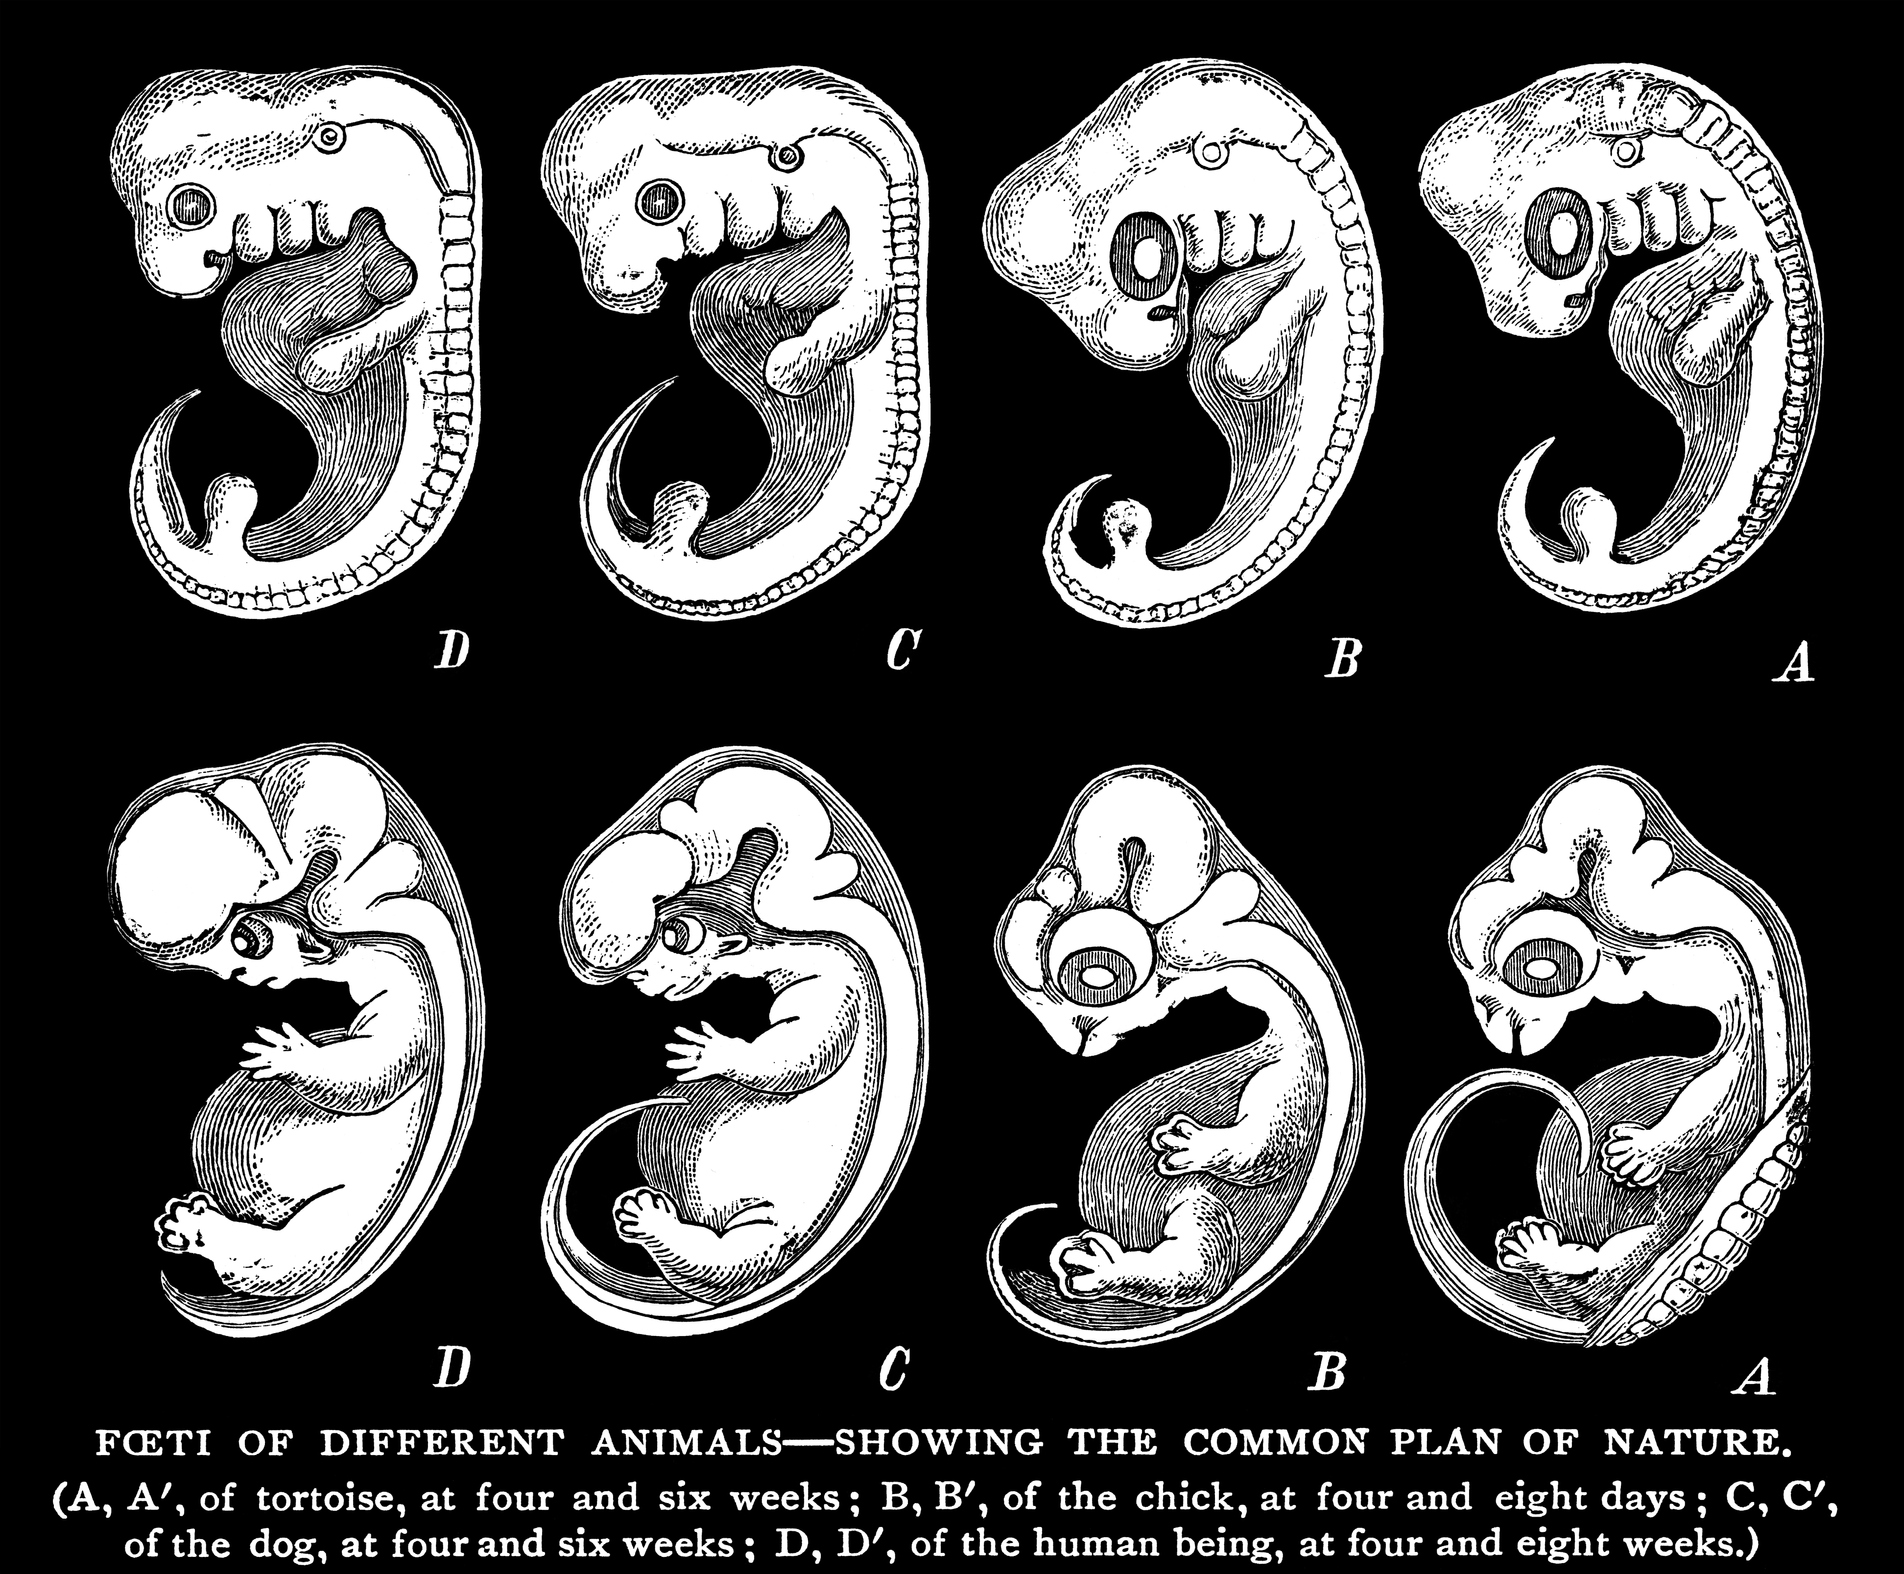 Frühe fötale Entwicklung bei einer Schildkröte (A), einem Küken (B), einem Hund (C) und einem Menschen (D).